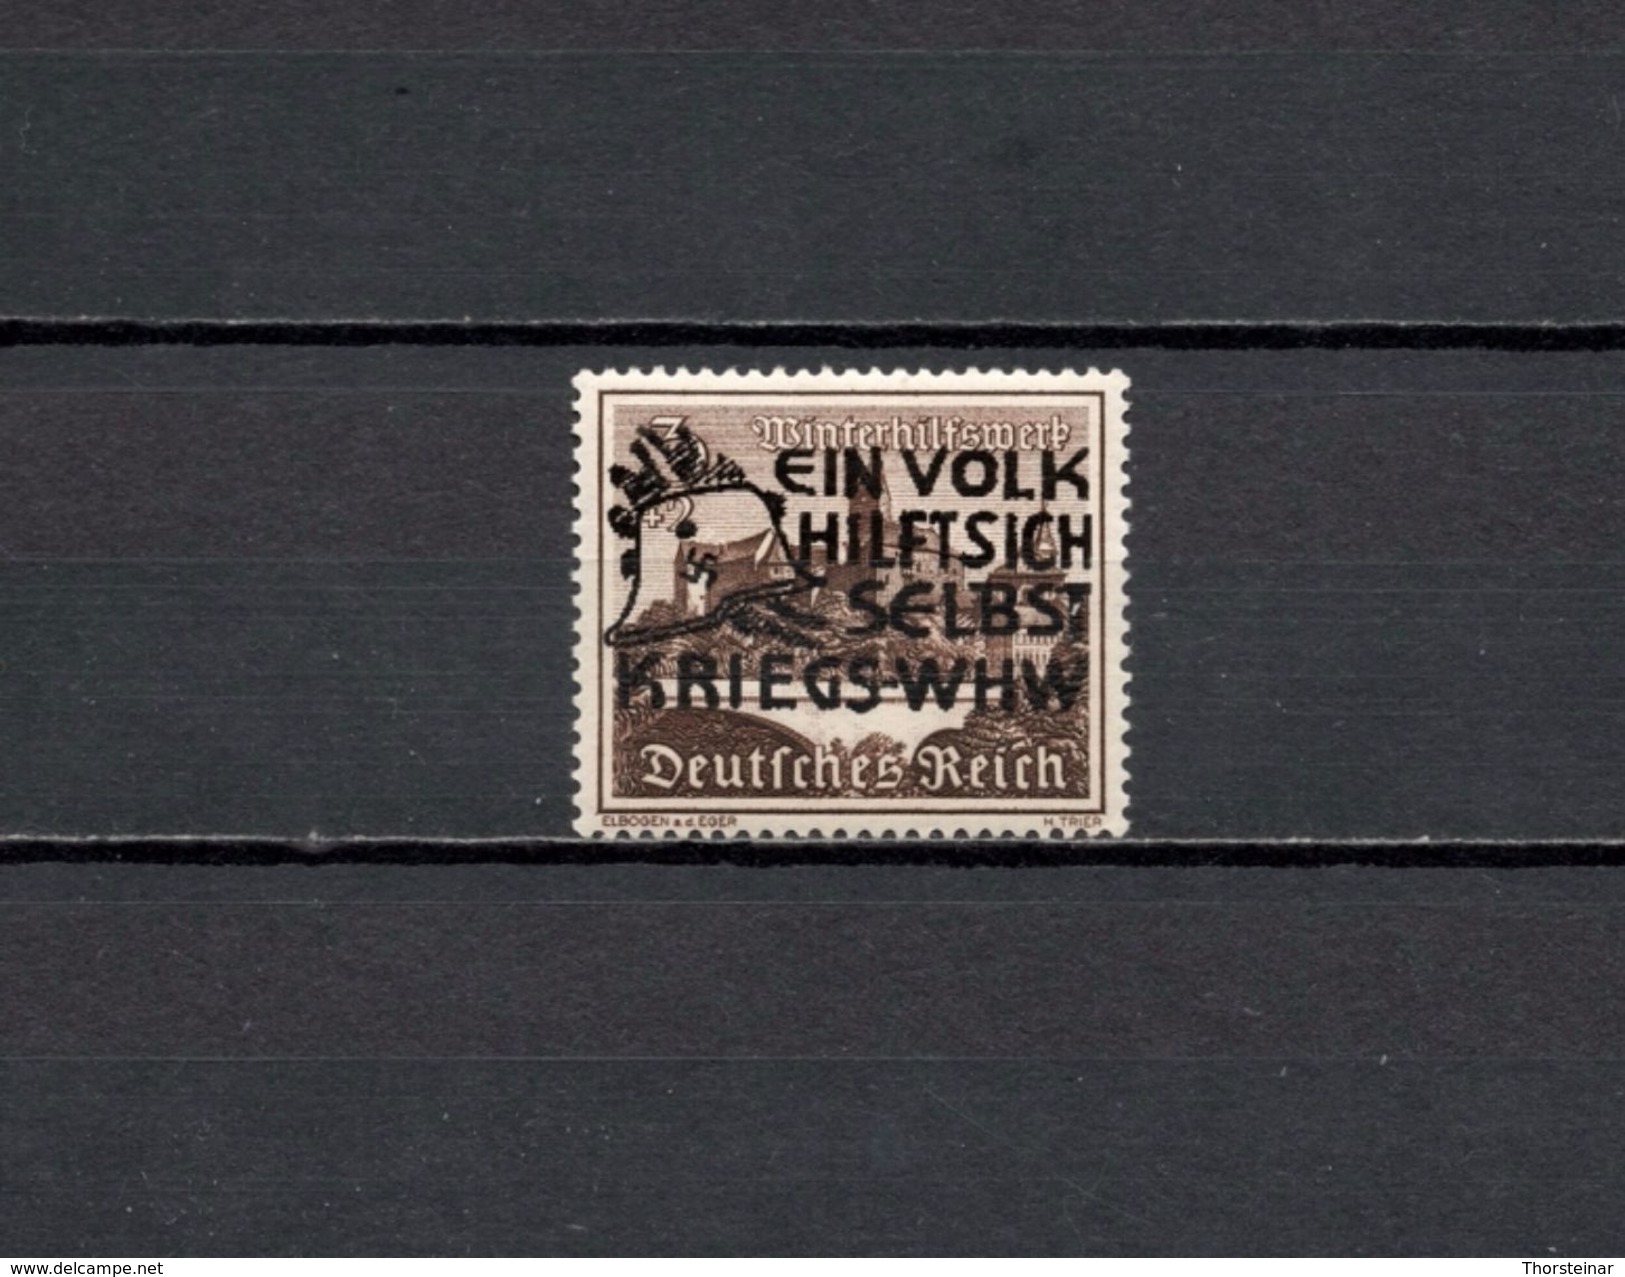 1939 Deutsches Reich WHW Bauten Overprint Mi 730 Postfrisch - Neufs